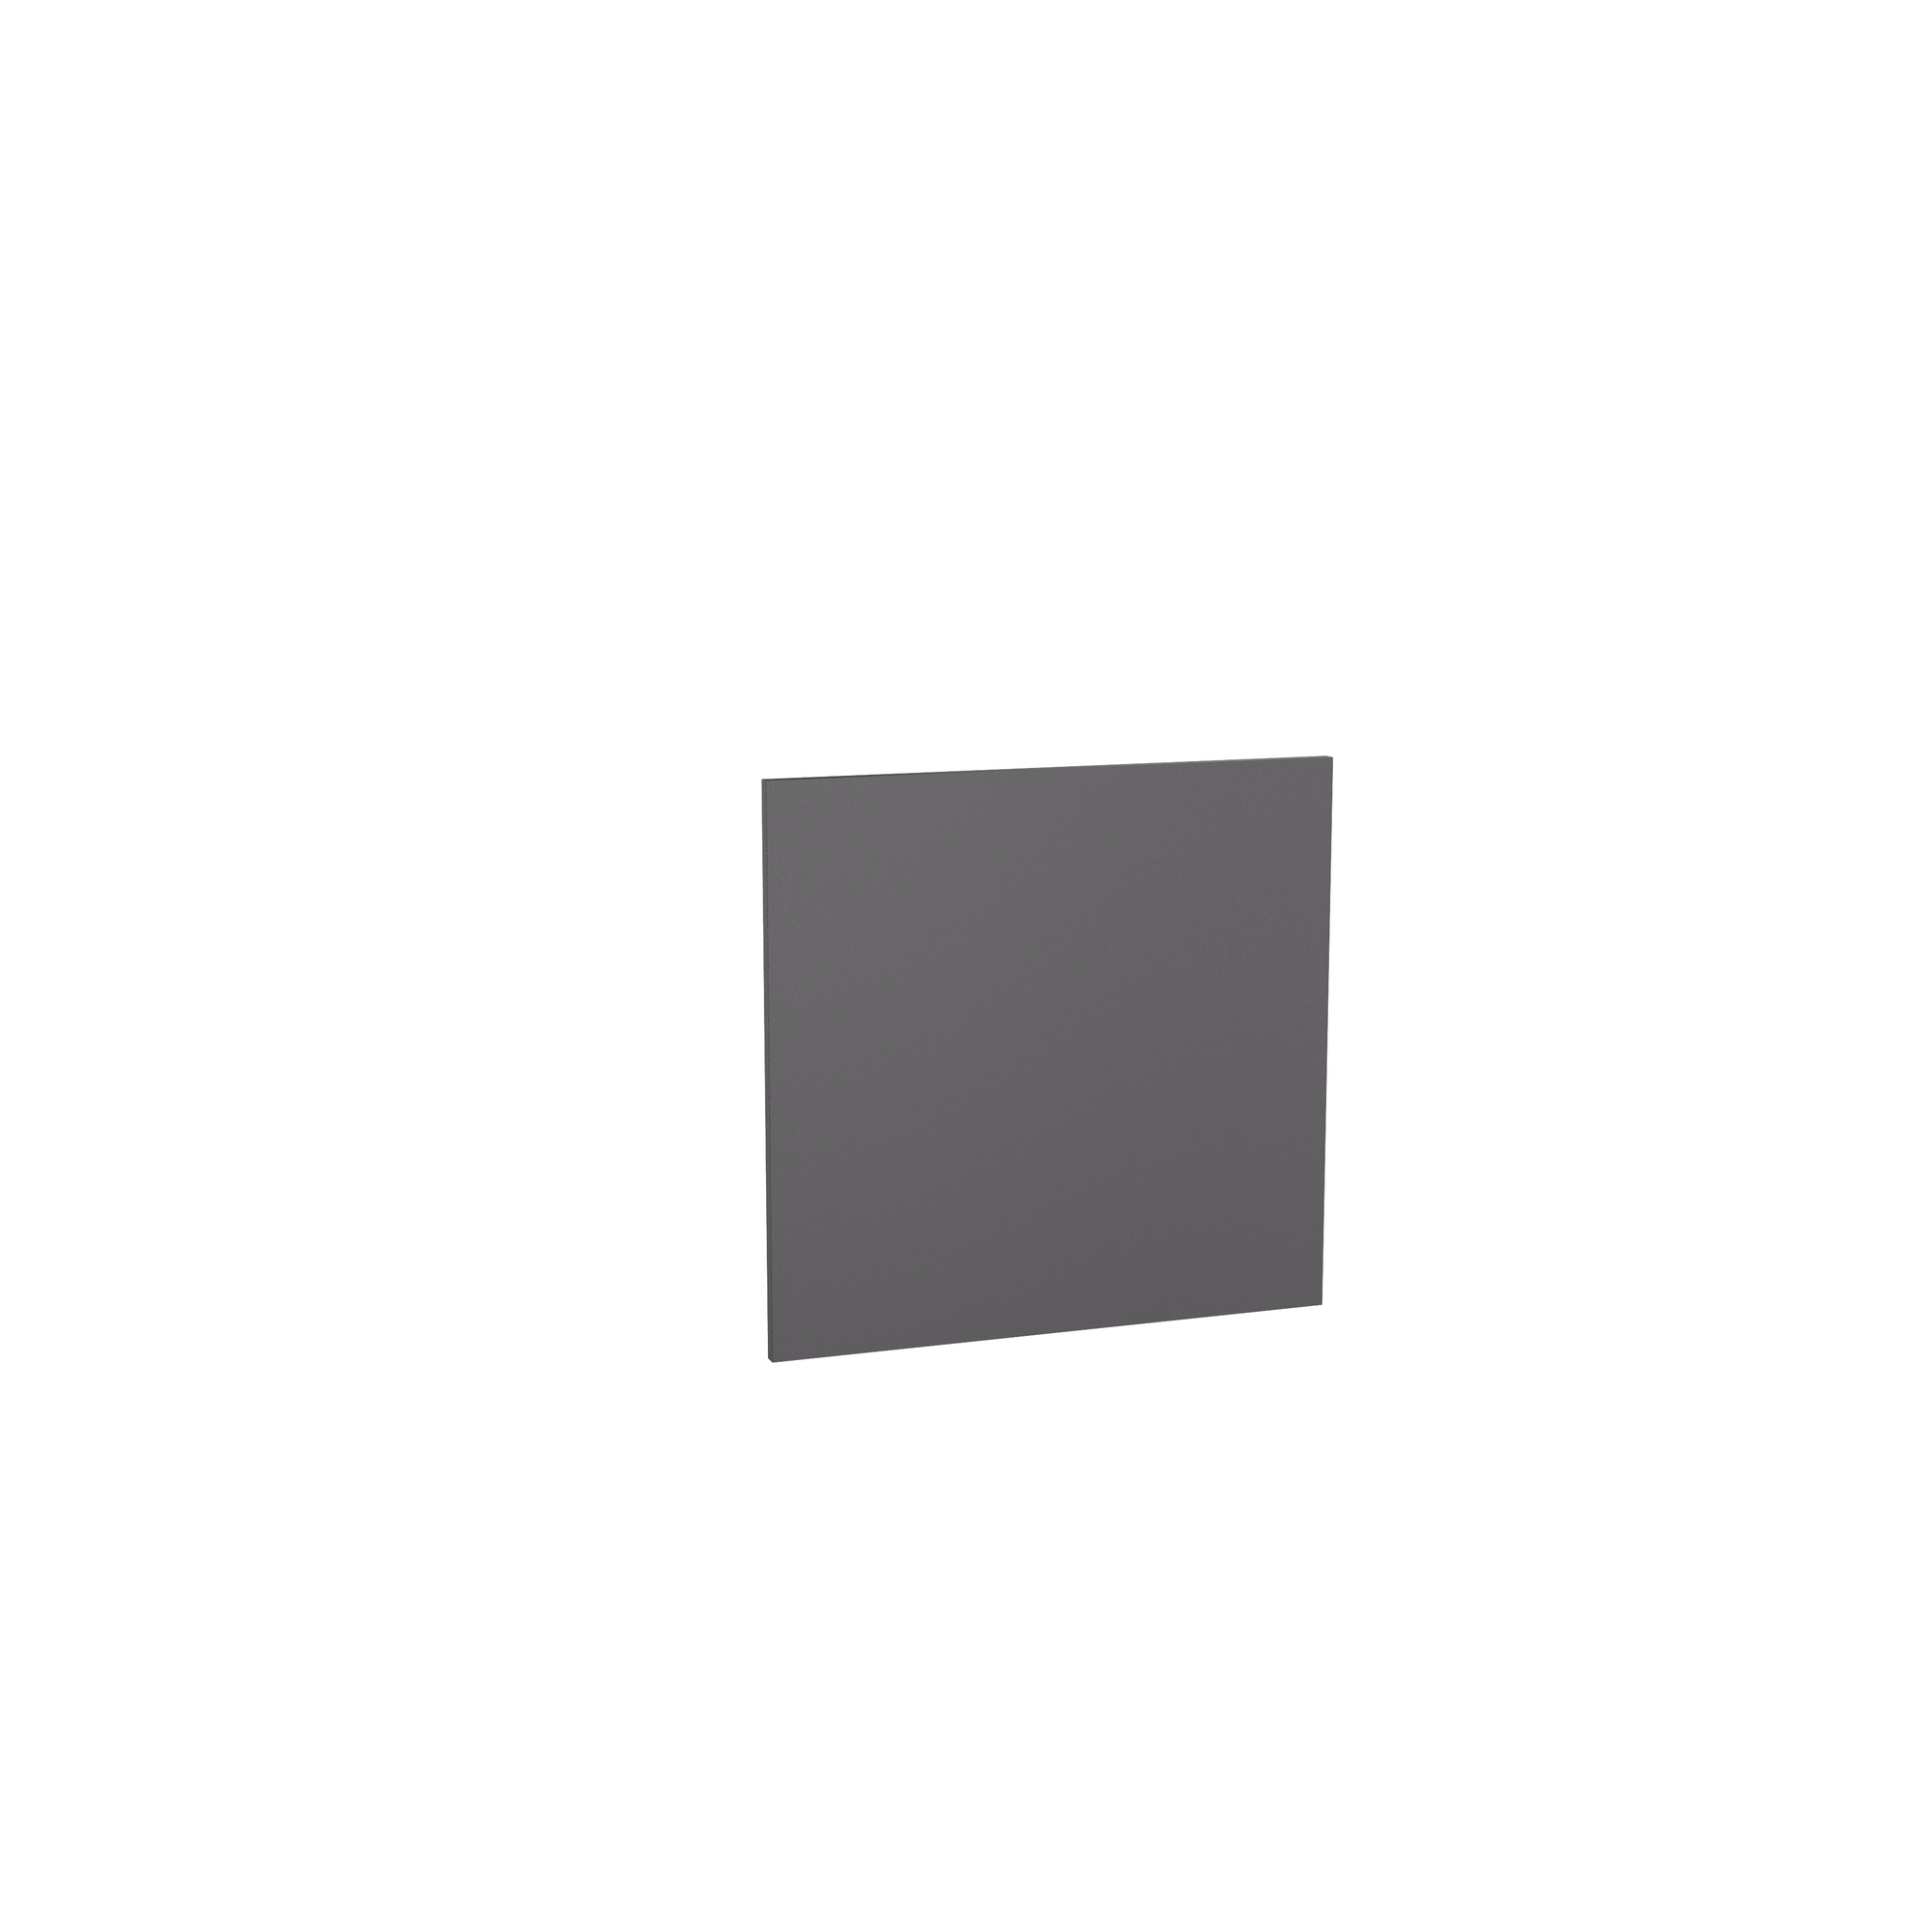 Tür für teilintegrierten Geschirrspüler 'Optikomfort Linus984' anthrazit 60 x 57,2 x 1,6 cm + product picture